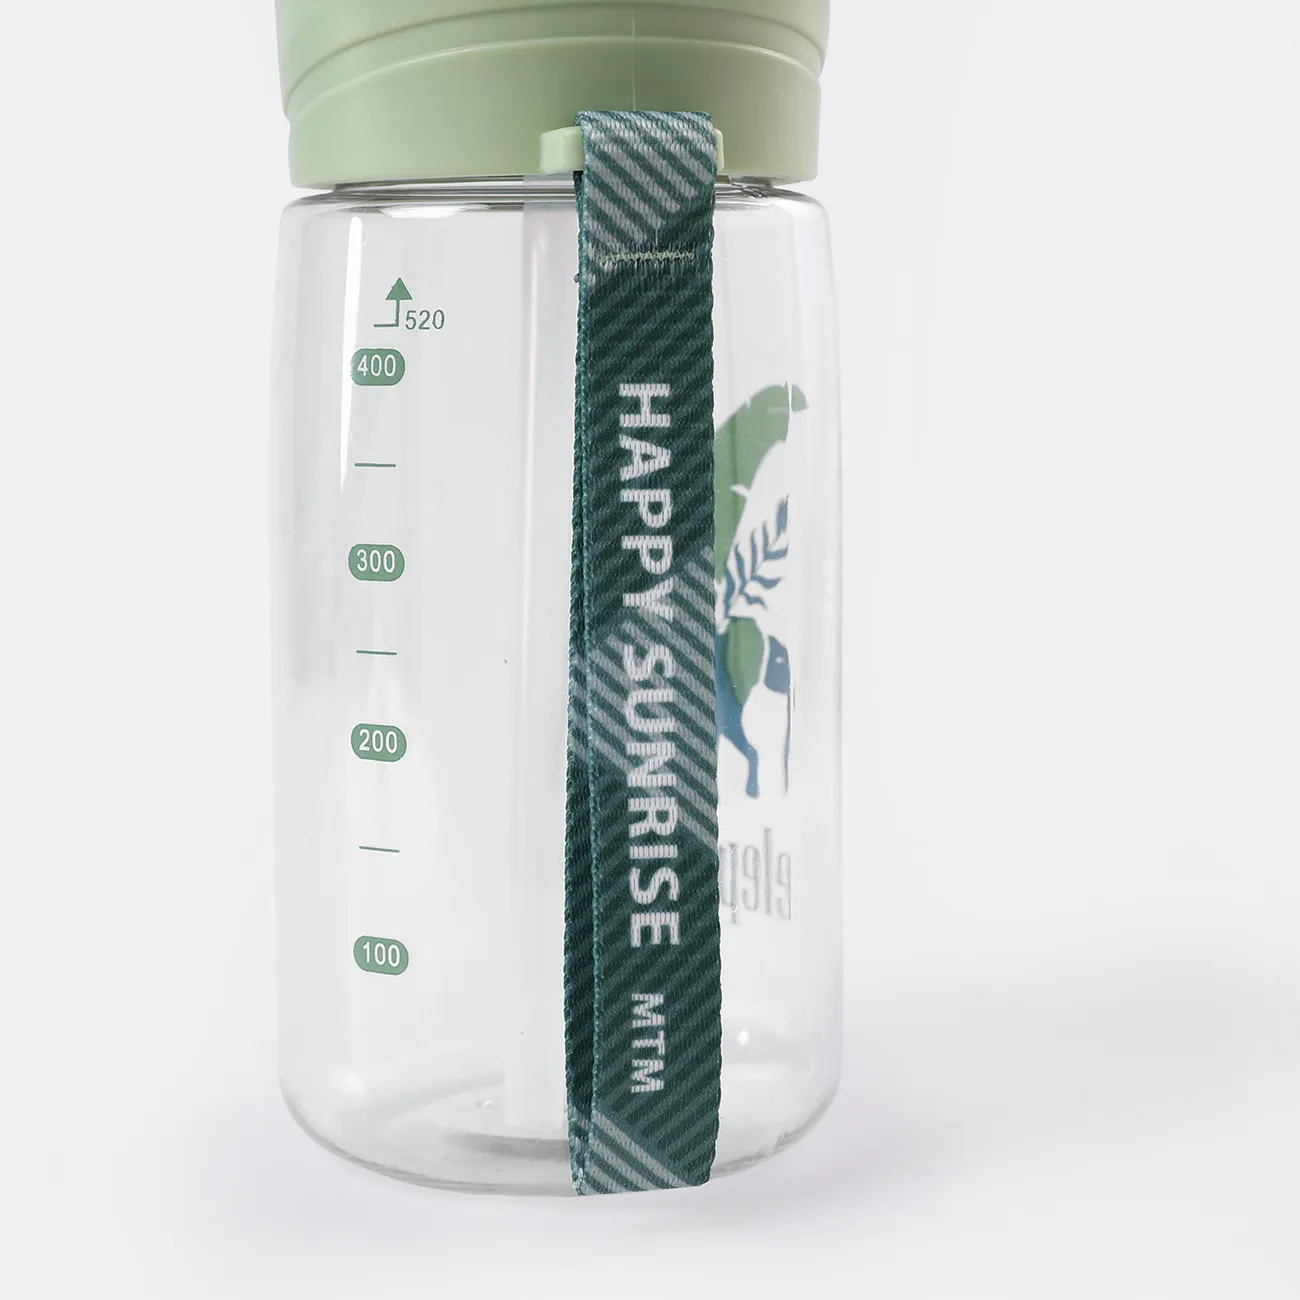 520 مللي / 17.59 أوقية كوب ماء من القش زجاجة مياه سعة كبيرة مع مقياس زجاجة رياضية بلاستيكية للكبار في الهواء الطلق كوب محمول اخضر فاتح big image 1